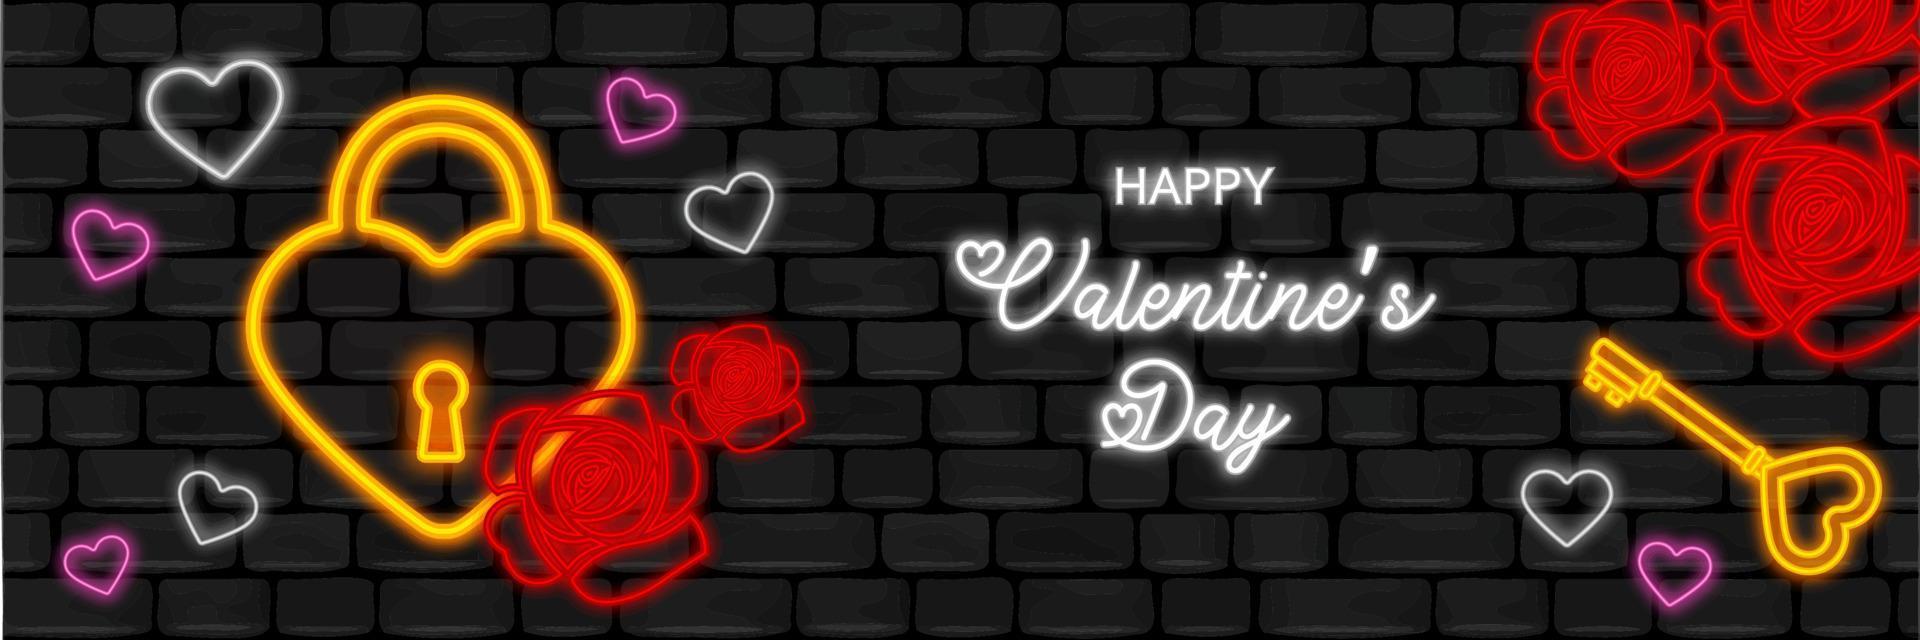 Valentijnsdagbanner met neonelementen op zwarte muurachtergrond vector